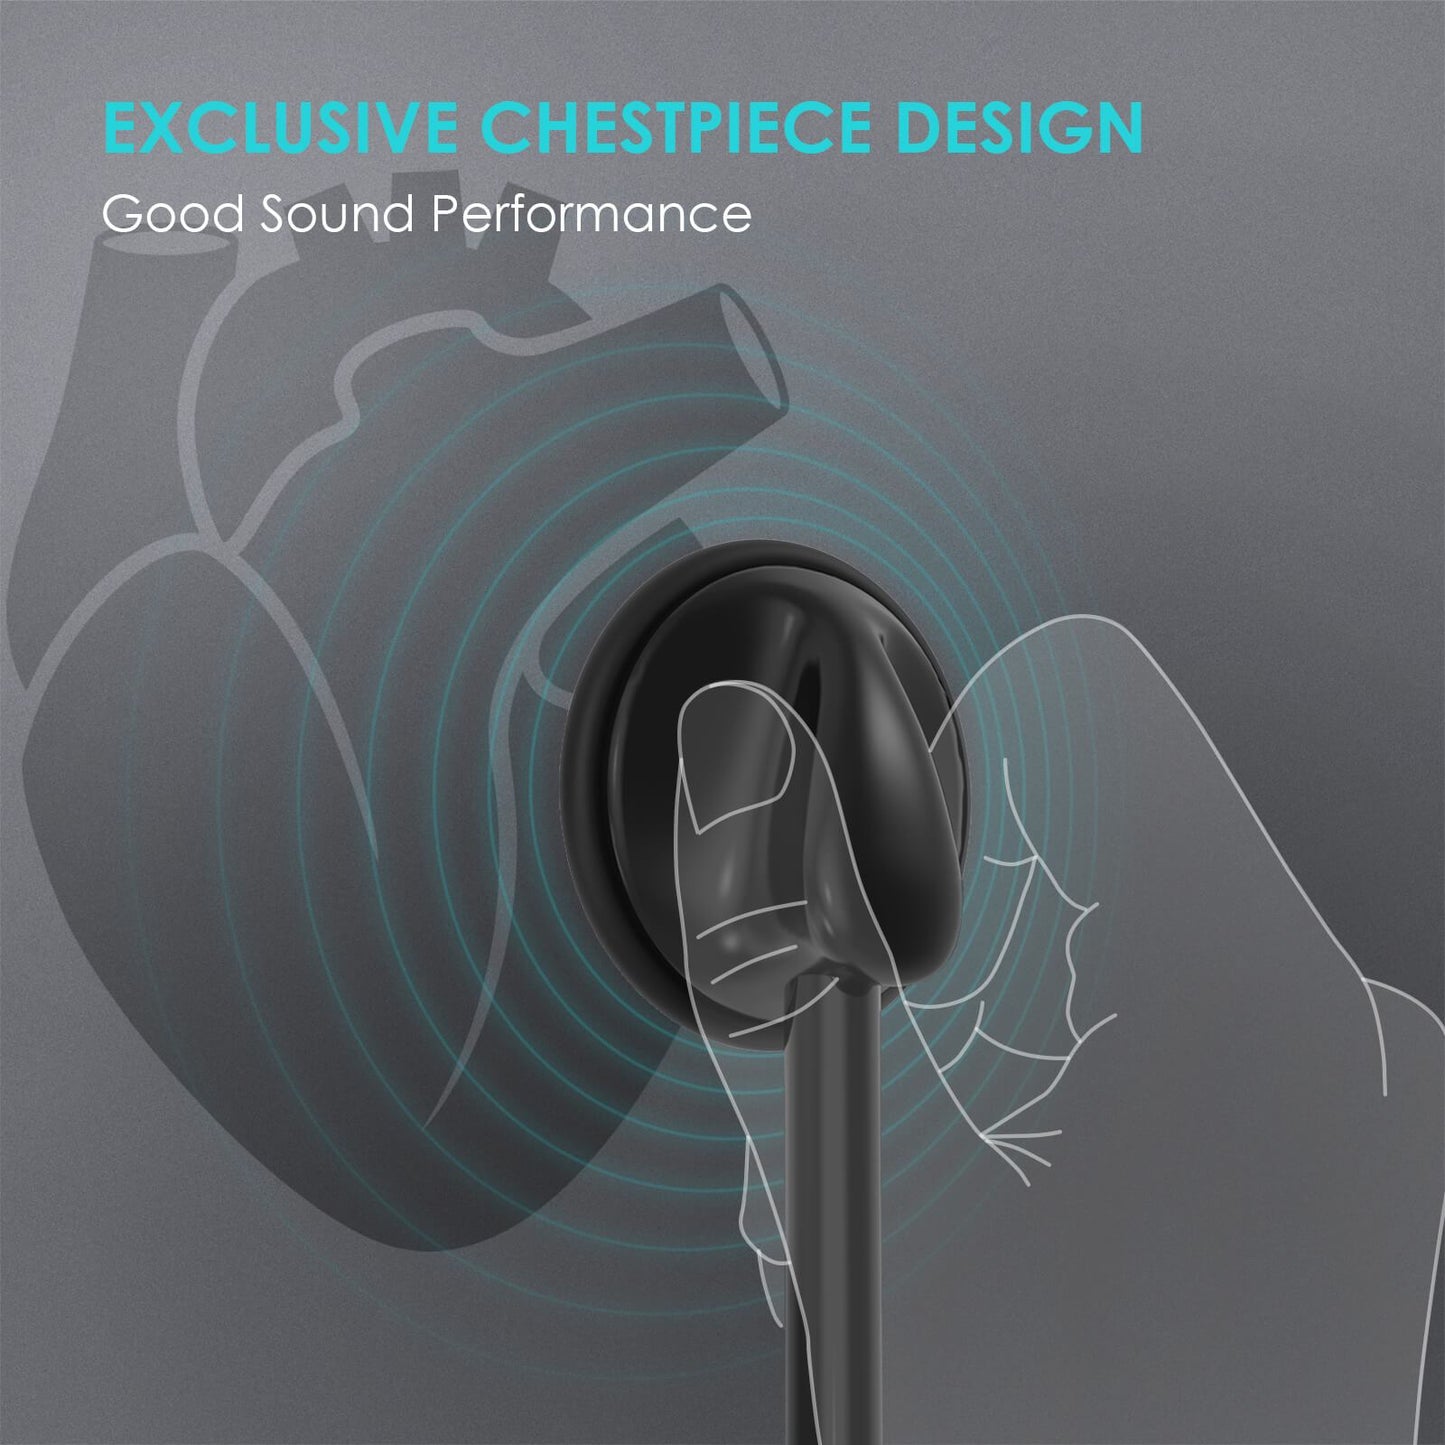 exclusive chestpiece design, good sound performance